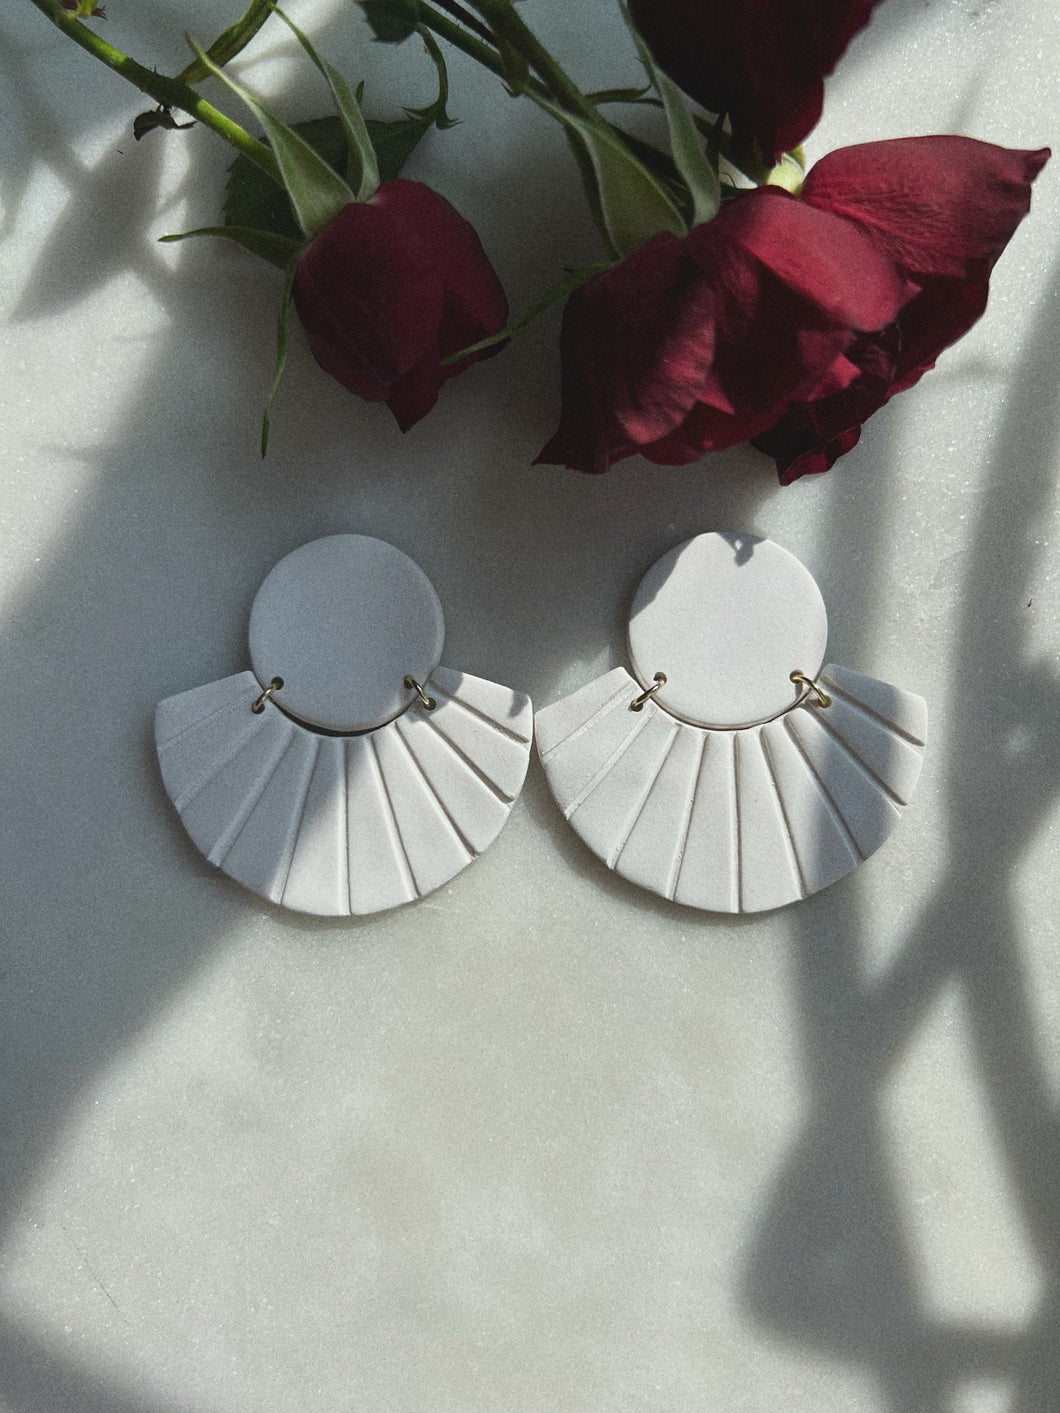 Shell style earrings